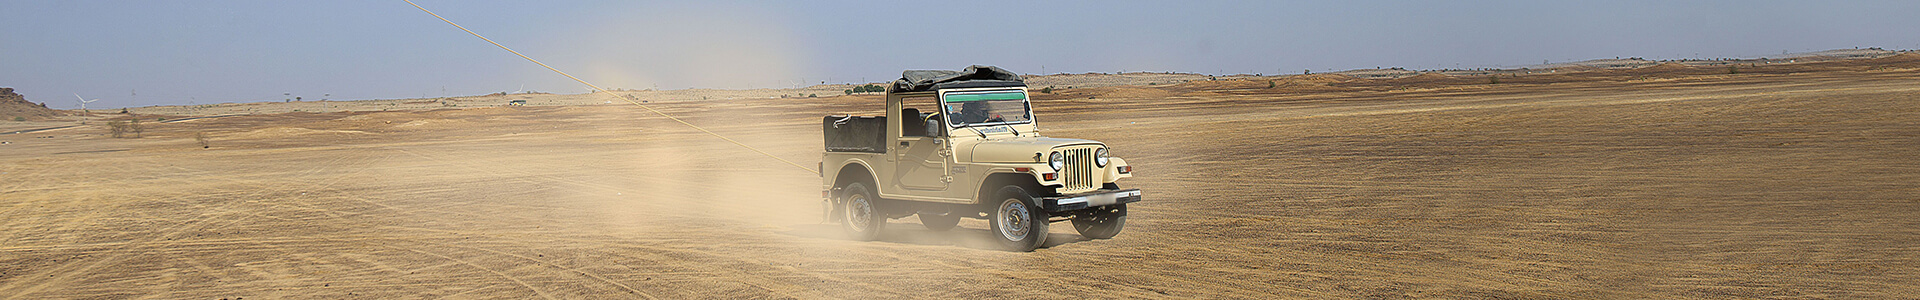 jeep-thar-desert-hukam-rajasthan